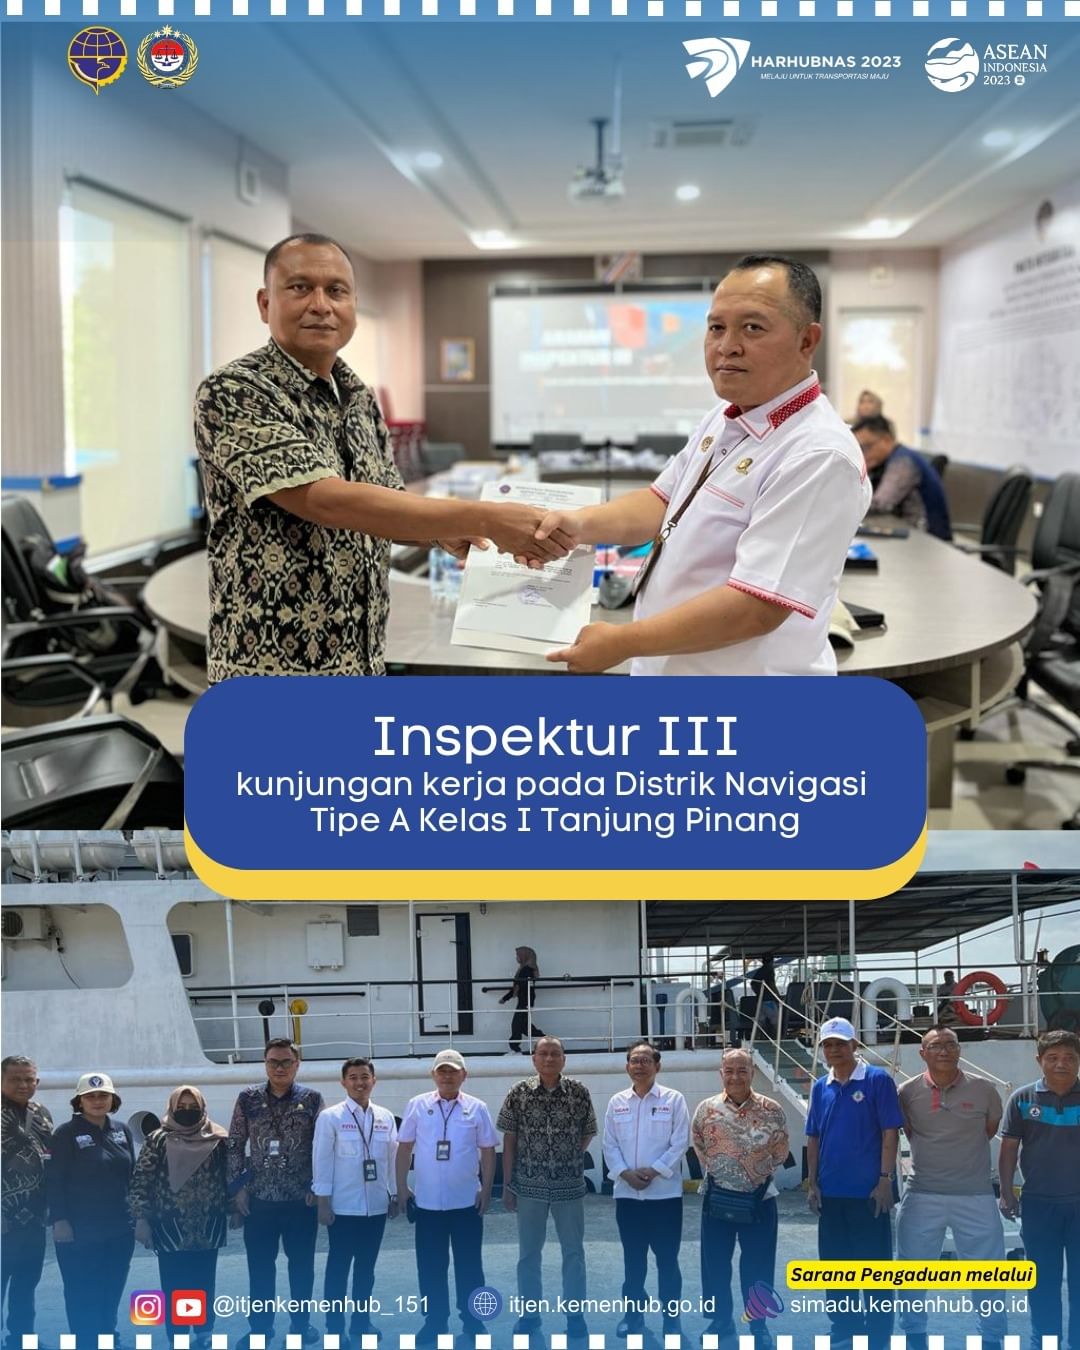 Inspektur III Melakukan Kunja Pada Disnav Tipe A Kelas I Tanjung Pinang